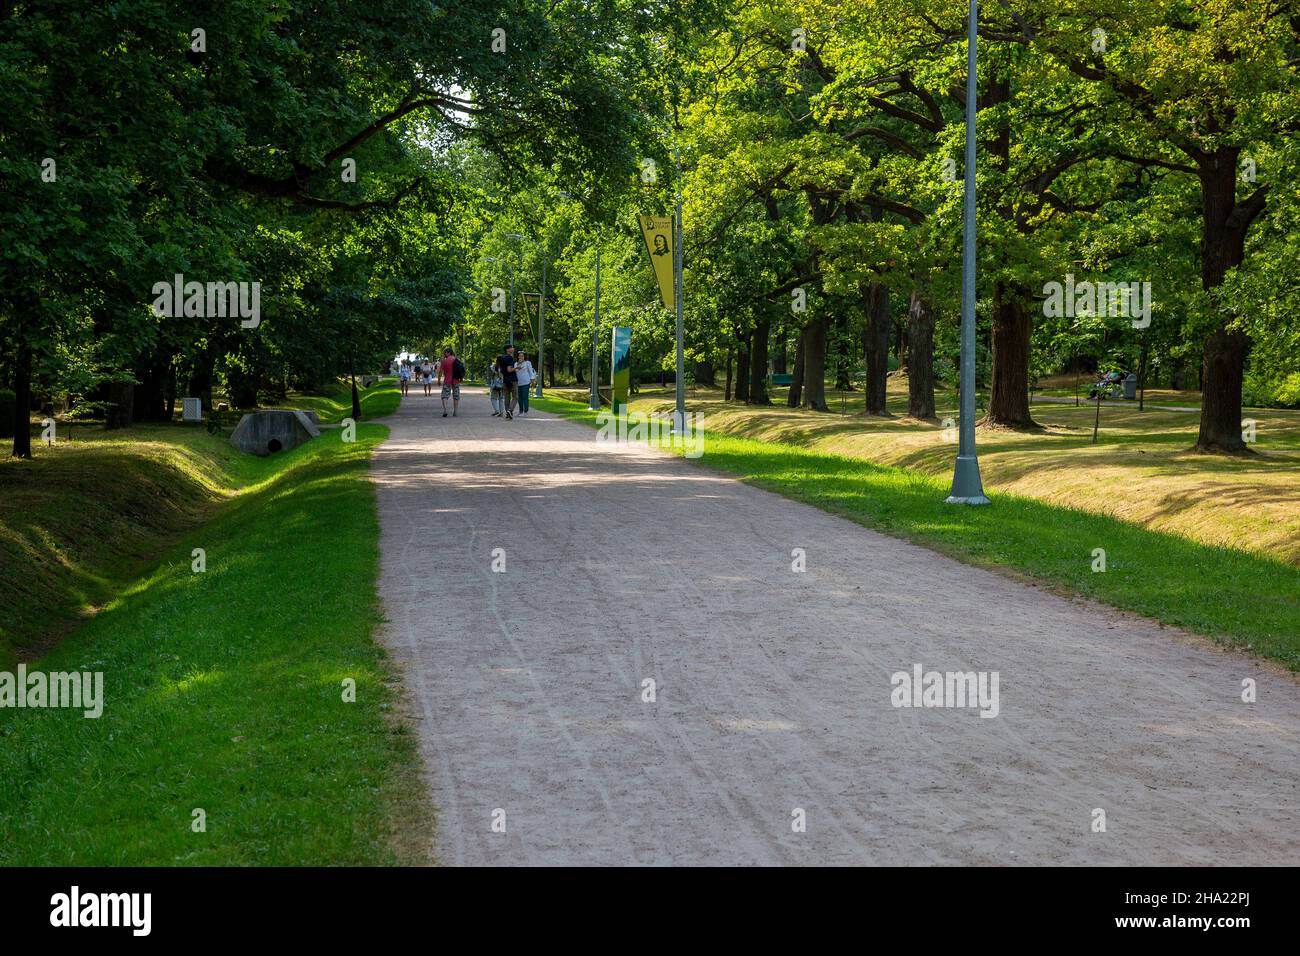 Saint-Pétersbourg, Russie - 13 juillet 2021 : allée dans le parc central de la culture et des loisirs de la ville Dubki de Sestroretsk, Saint-Pétersbourg Banque D'Images